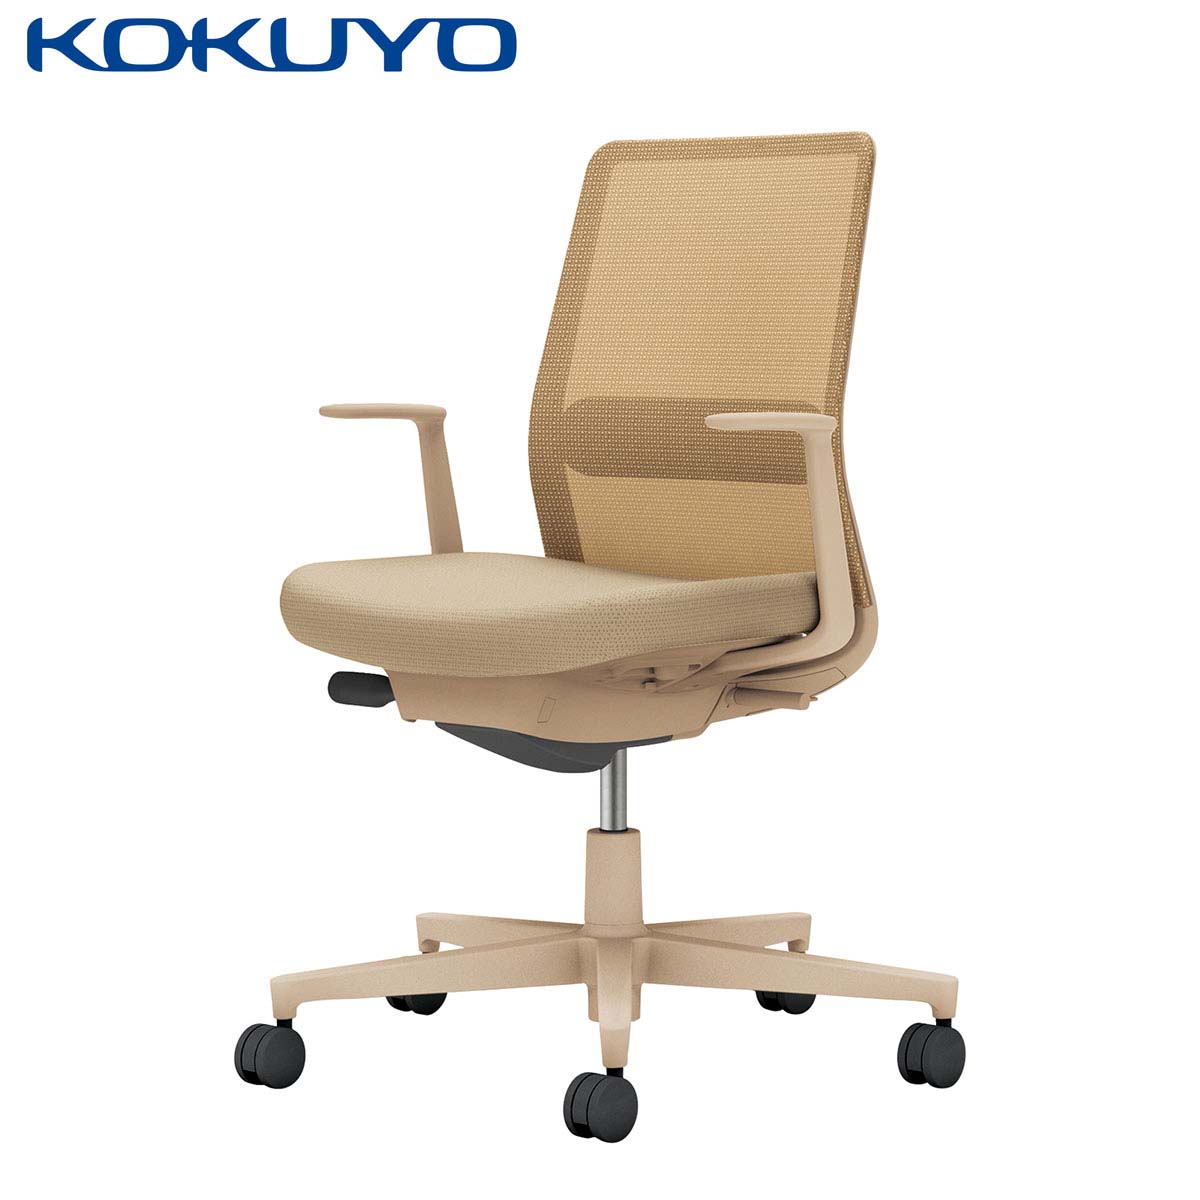 コクヨ デスクチェア オフィスチェア 椅子 Monet モネット C03-Z112 背メッシュ L型肘 ランバーサポート 本体 脚ソフトベージュ